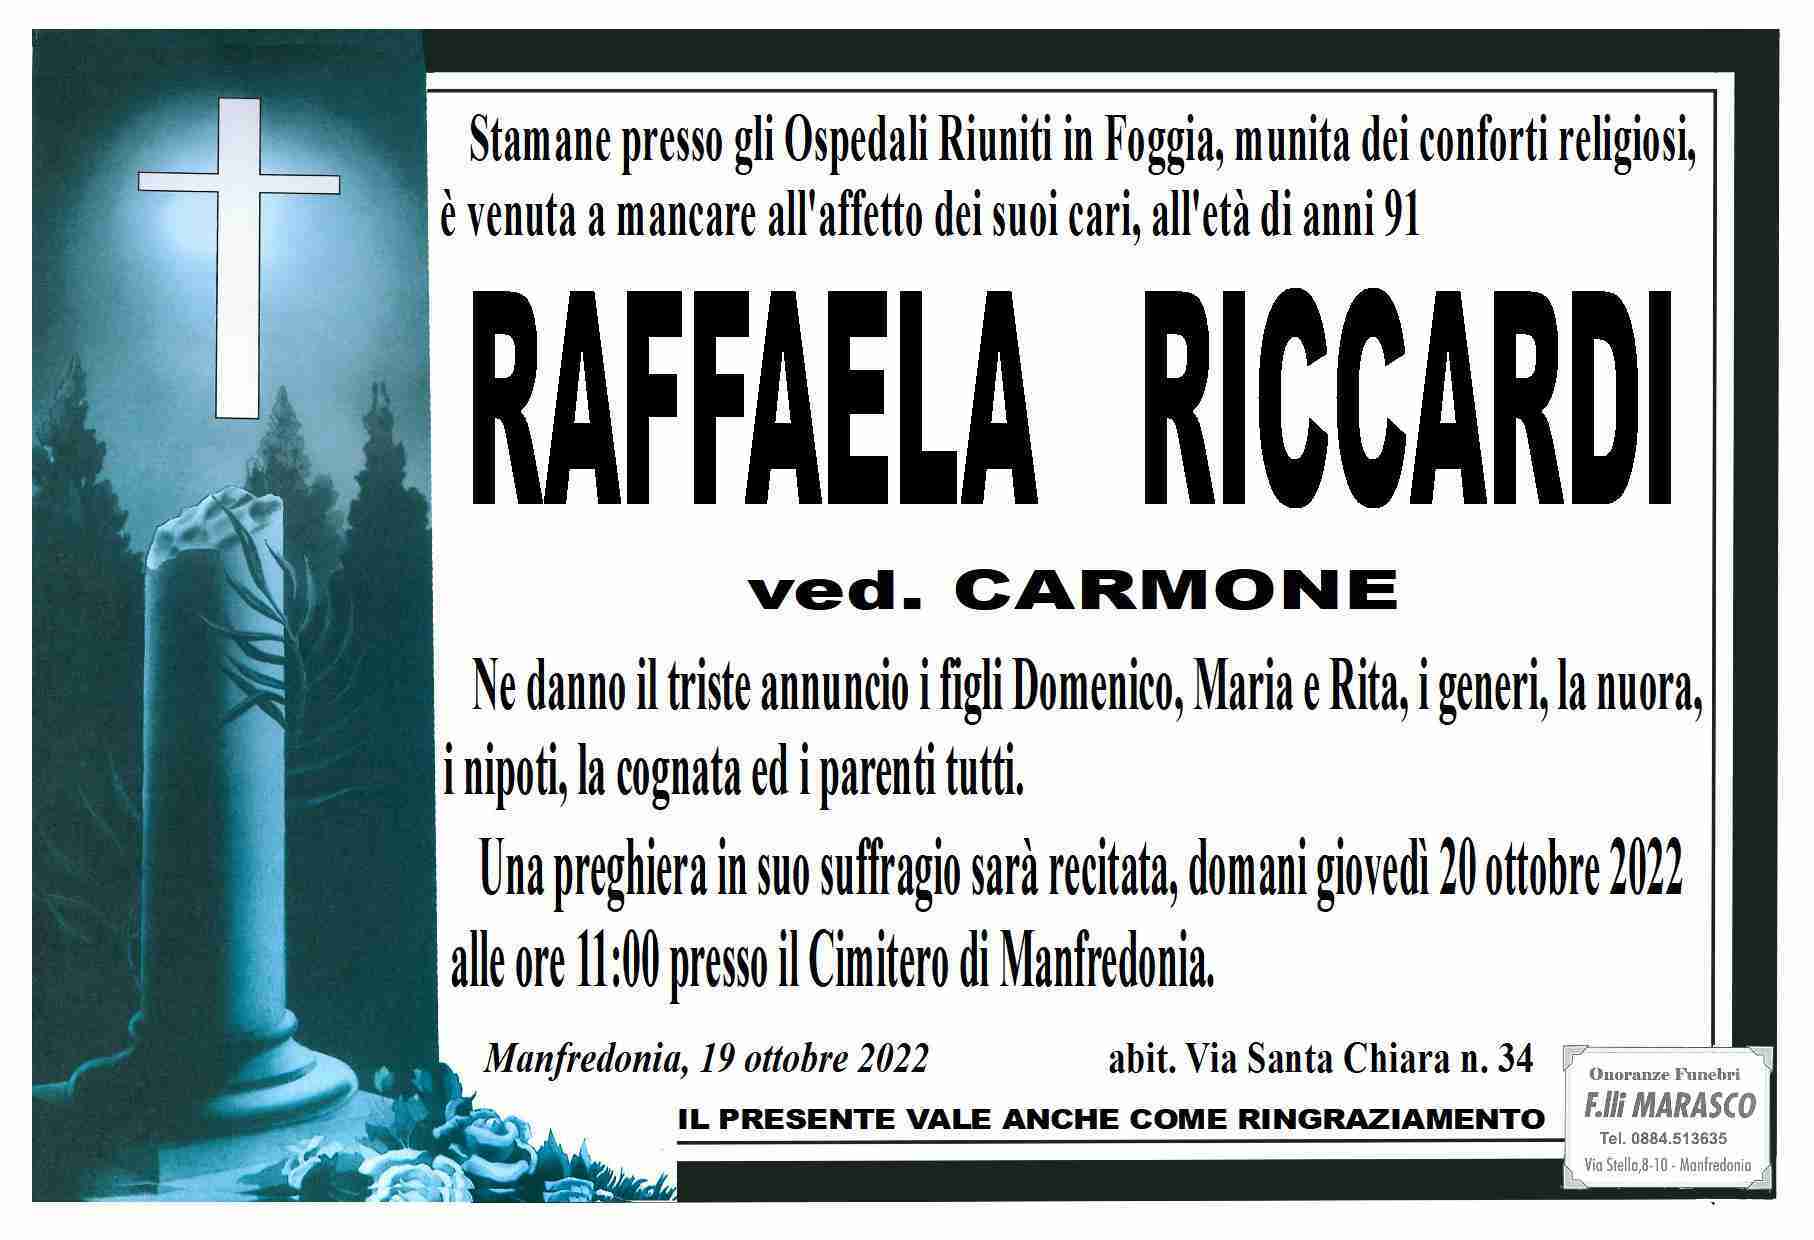 Raffaela Riccardi